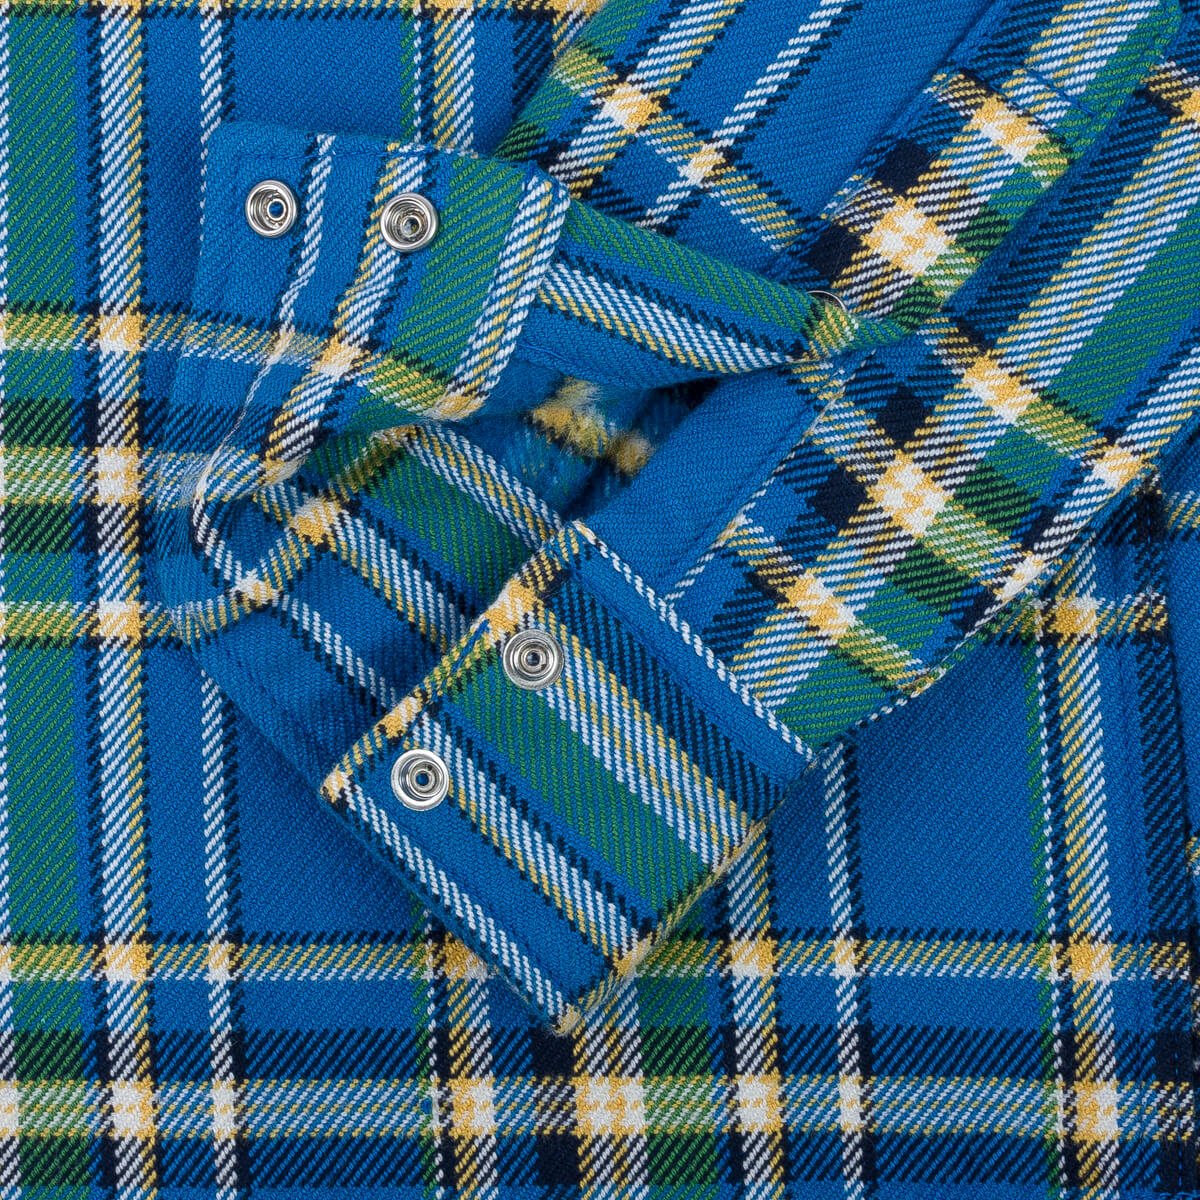 IHSH-370-BLU Ultra Heavy Flannel Tartan Check Western Shirt Blue